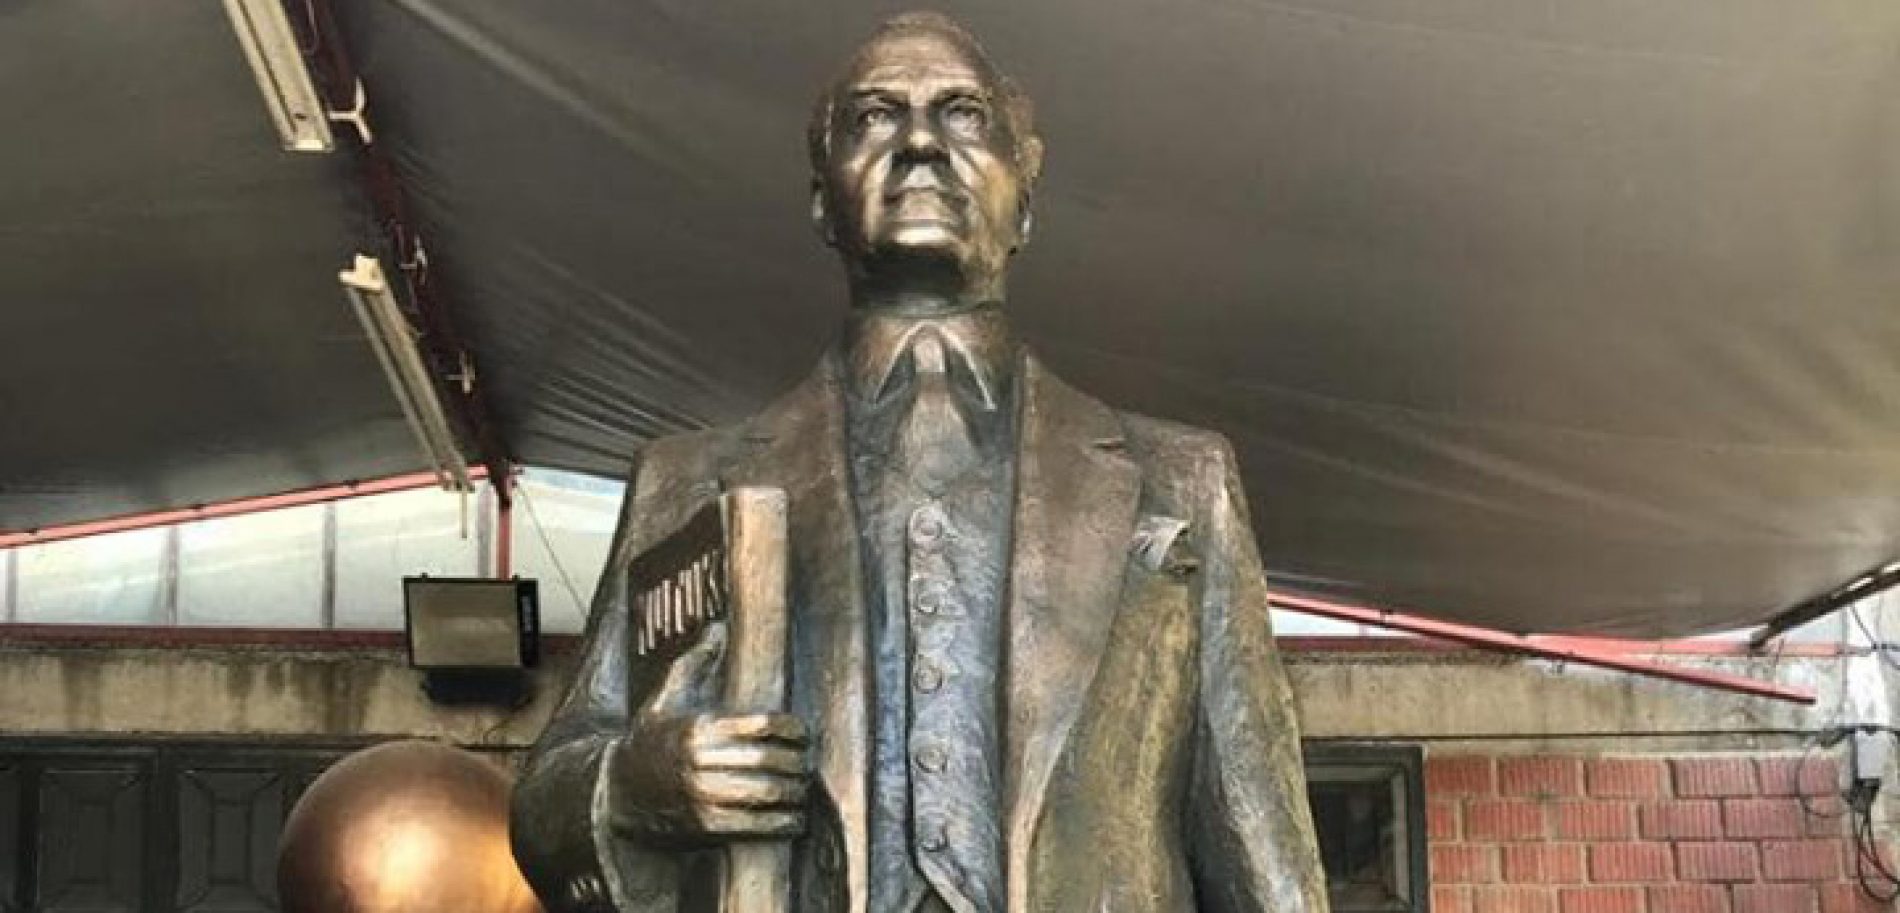 TYSD’nin Üsküp’de Yaptıracağı Atatürk Heykeli İle İlgili Beyoğlu Şubemizin Faaliyetleri